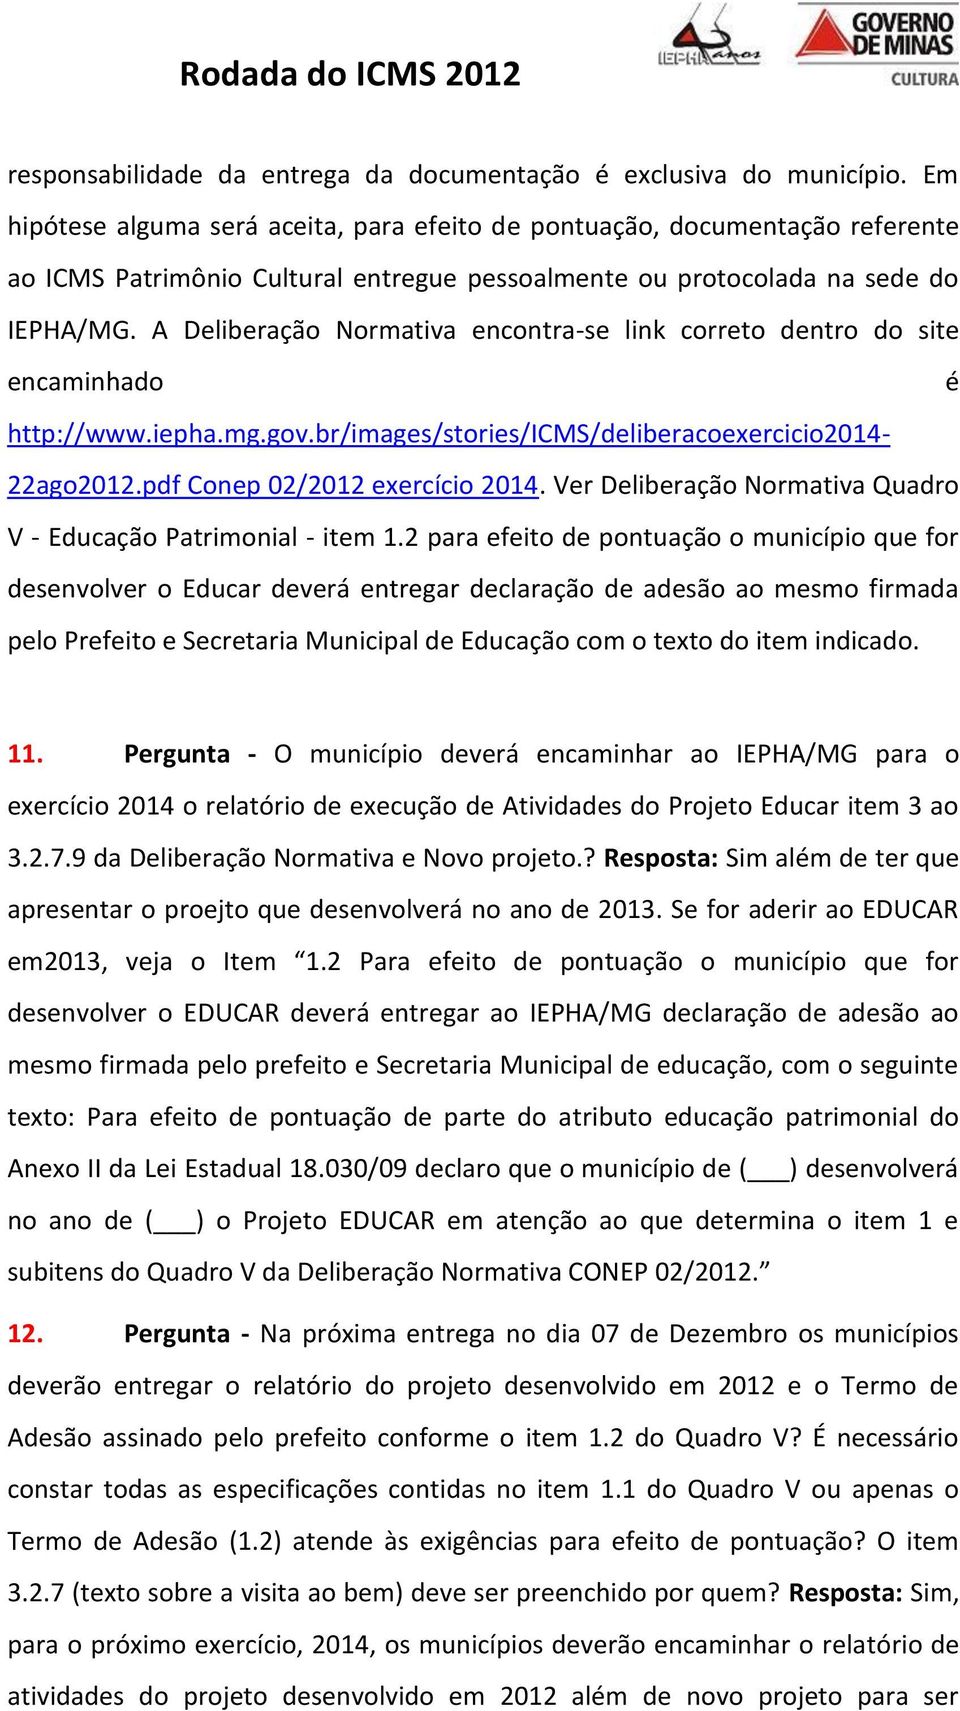 A Deliberação Normativa encontra-se link correto dentro do site encaminhado é http://www.iepha.mg.gov.br/images/stories/icms/deliberacoexercicio2014-22ago2012.pdf Conep 02/2012 exercício 2014.